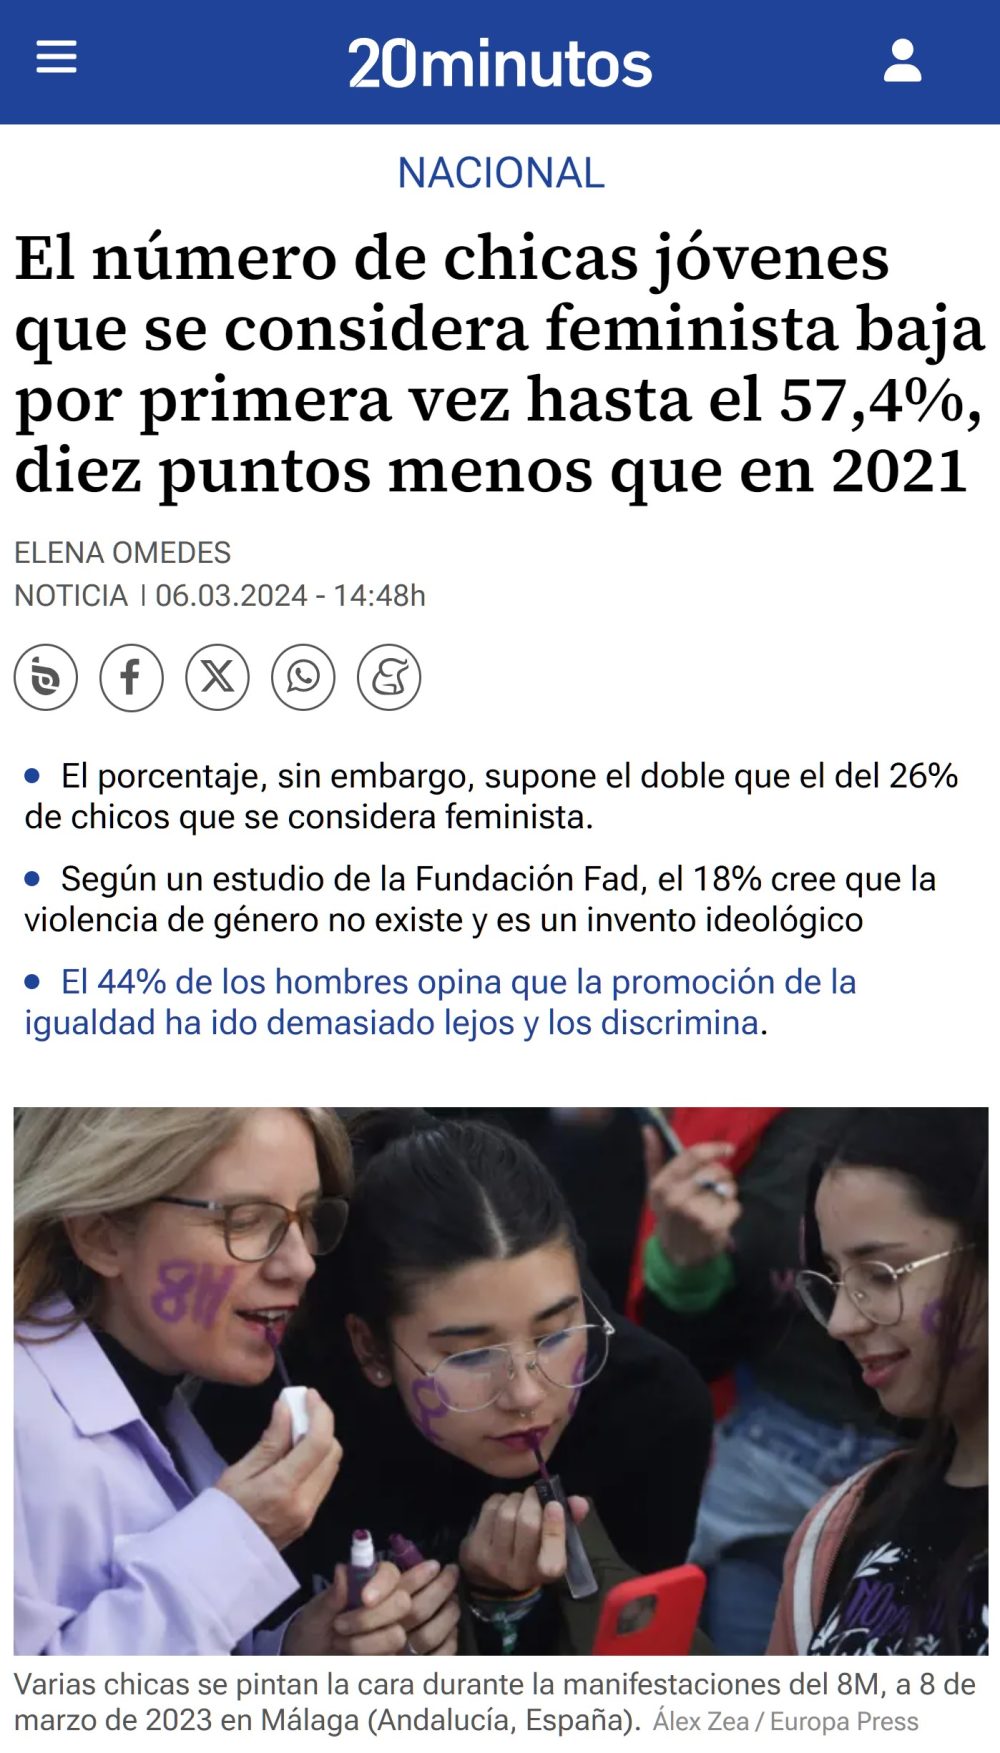 El número de chicas jóvenes que se consideran feministas baja 10 puntos desde 2021